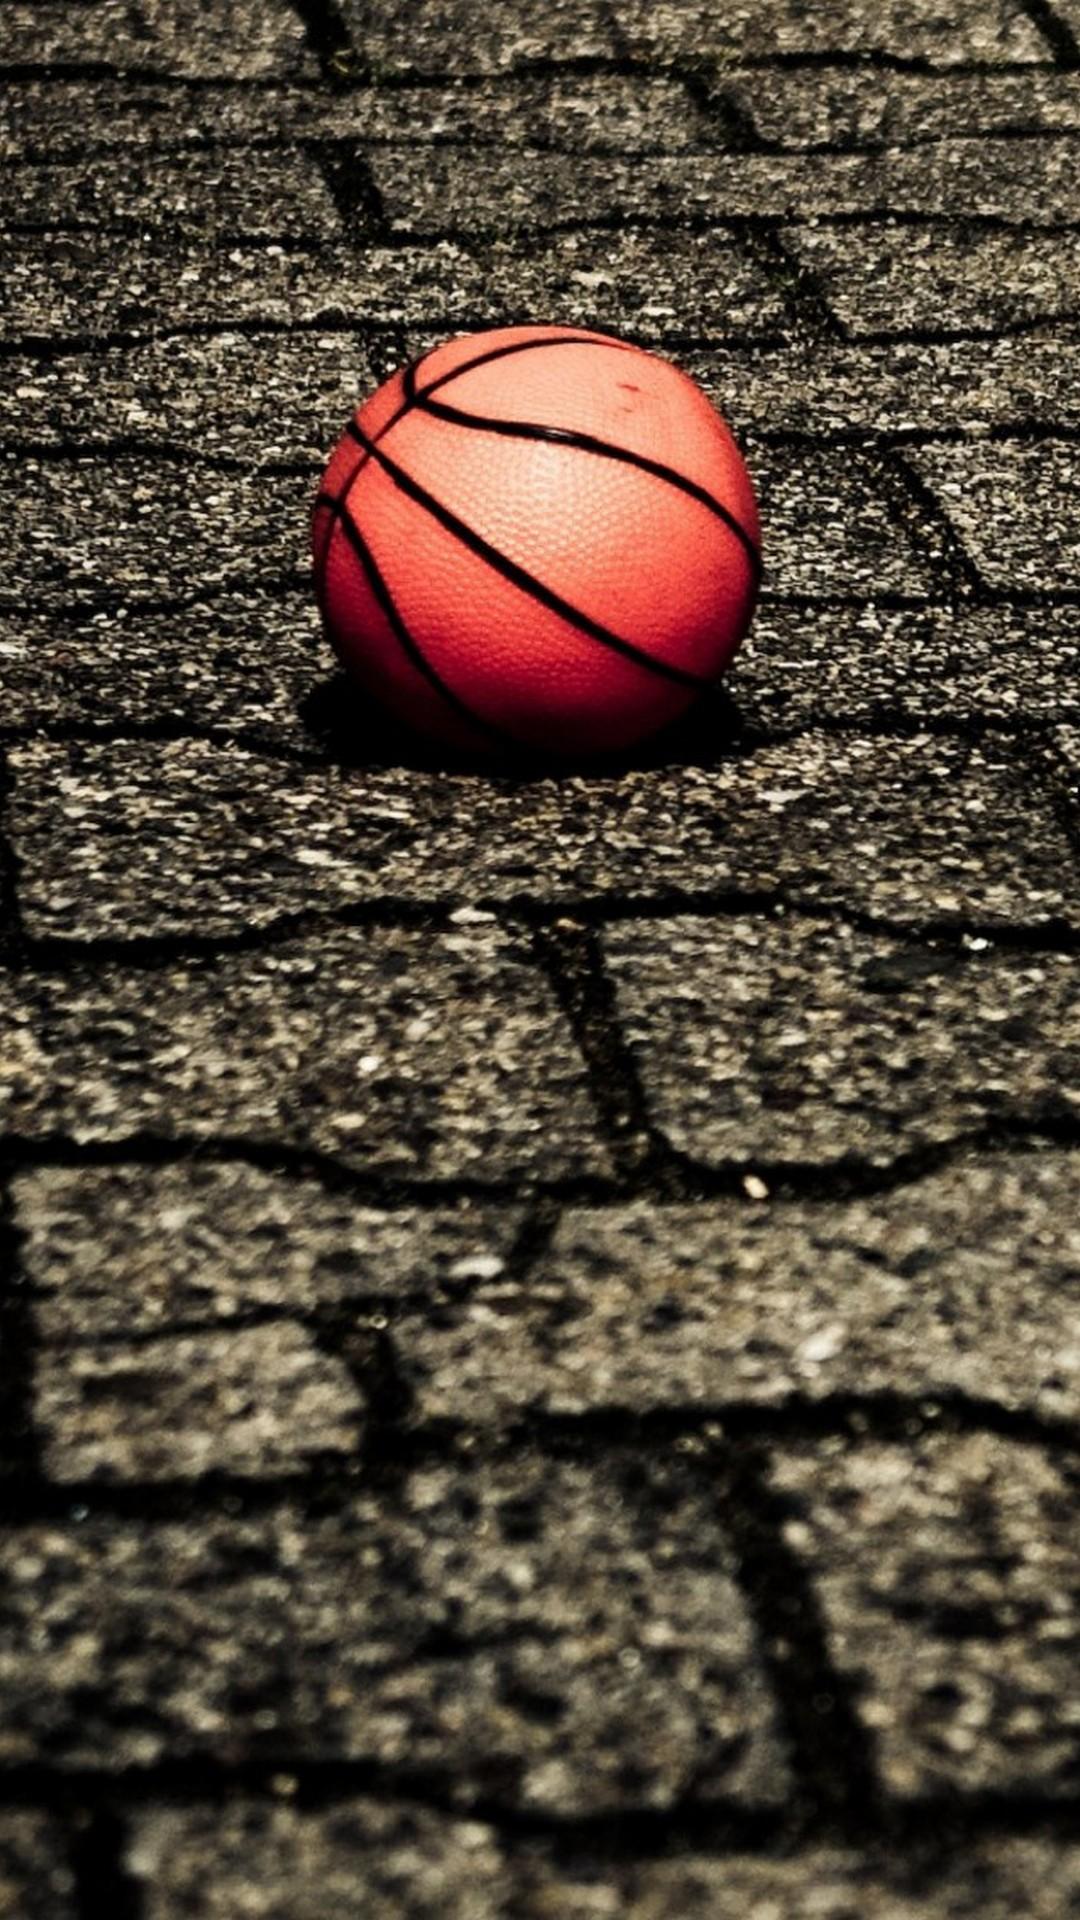 1080 x 1920 · jpeg - Basketball Wallpaper iPhone HD | 2019 Basketball Wallpaper